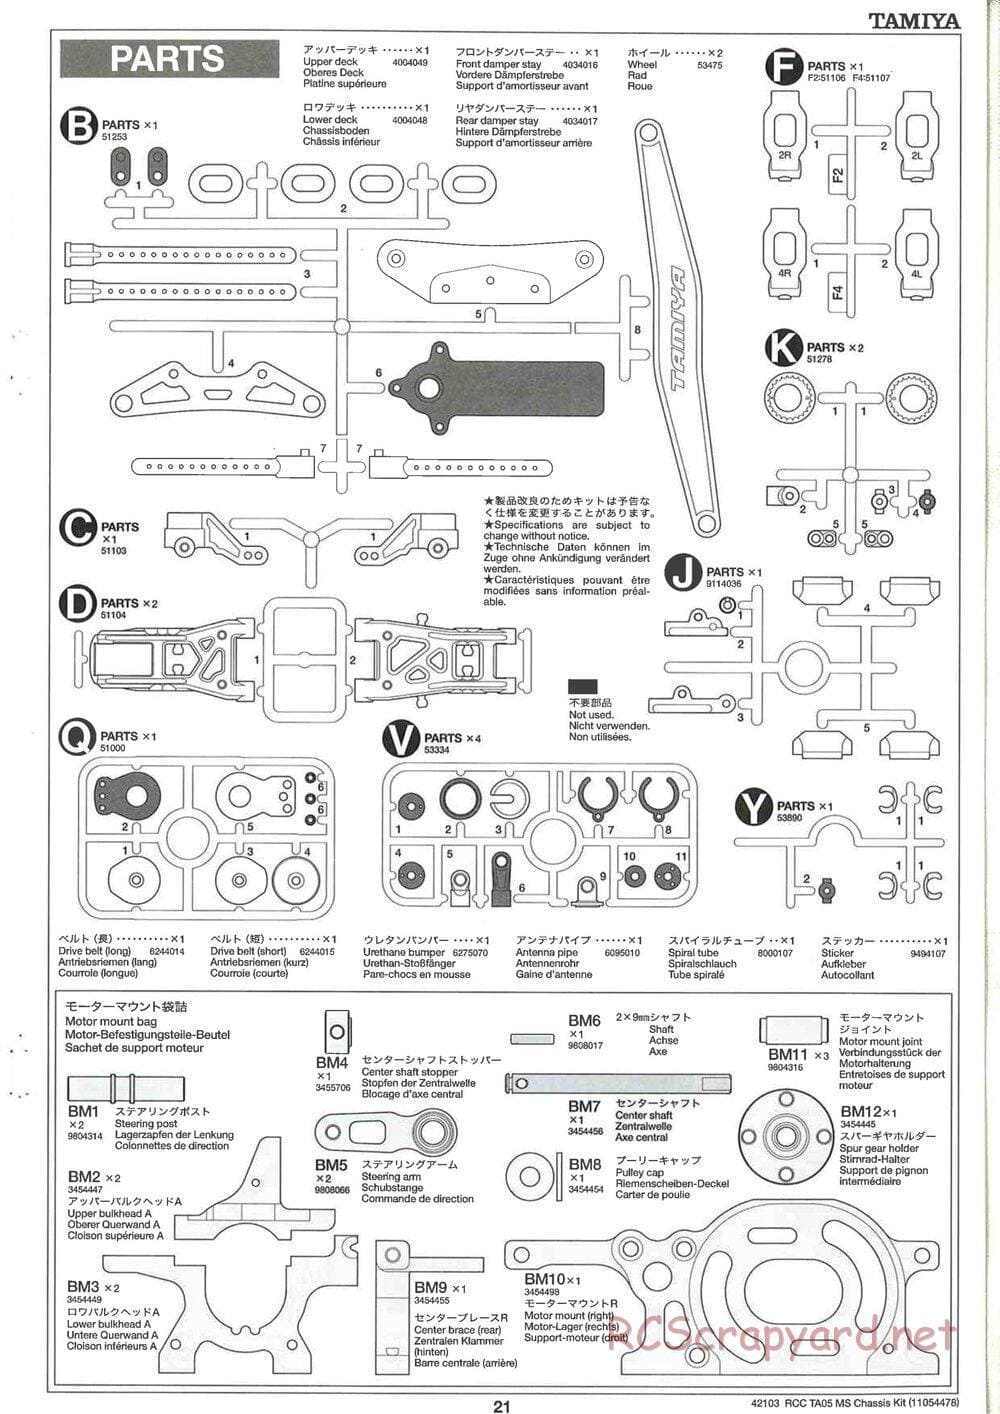 Tamiya - TA05 MS Chassis - Manual - Page 21